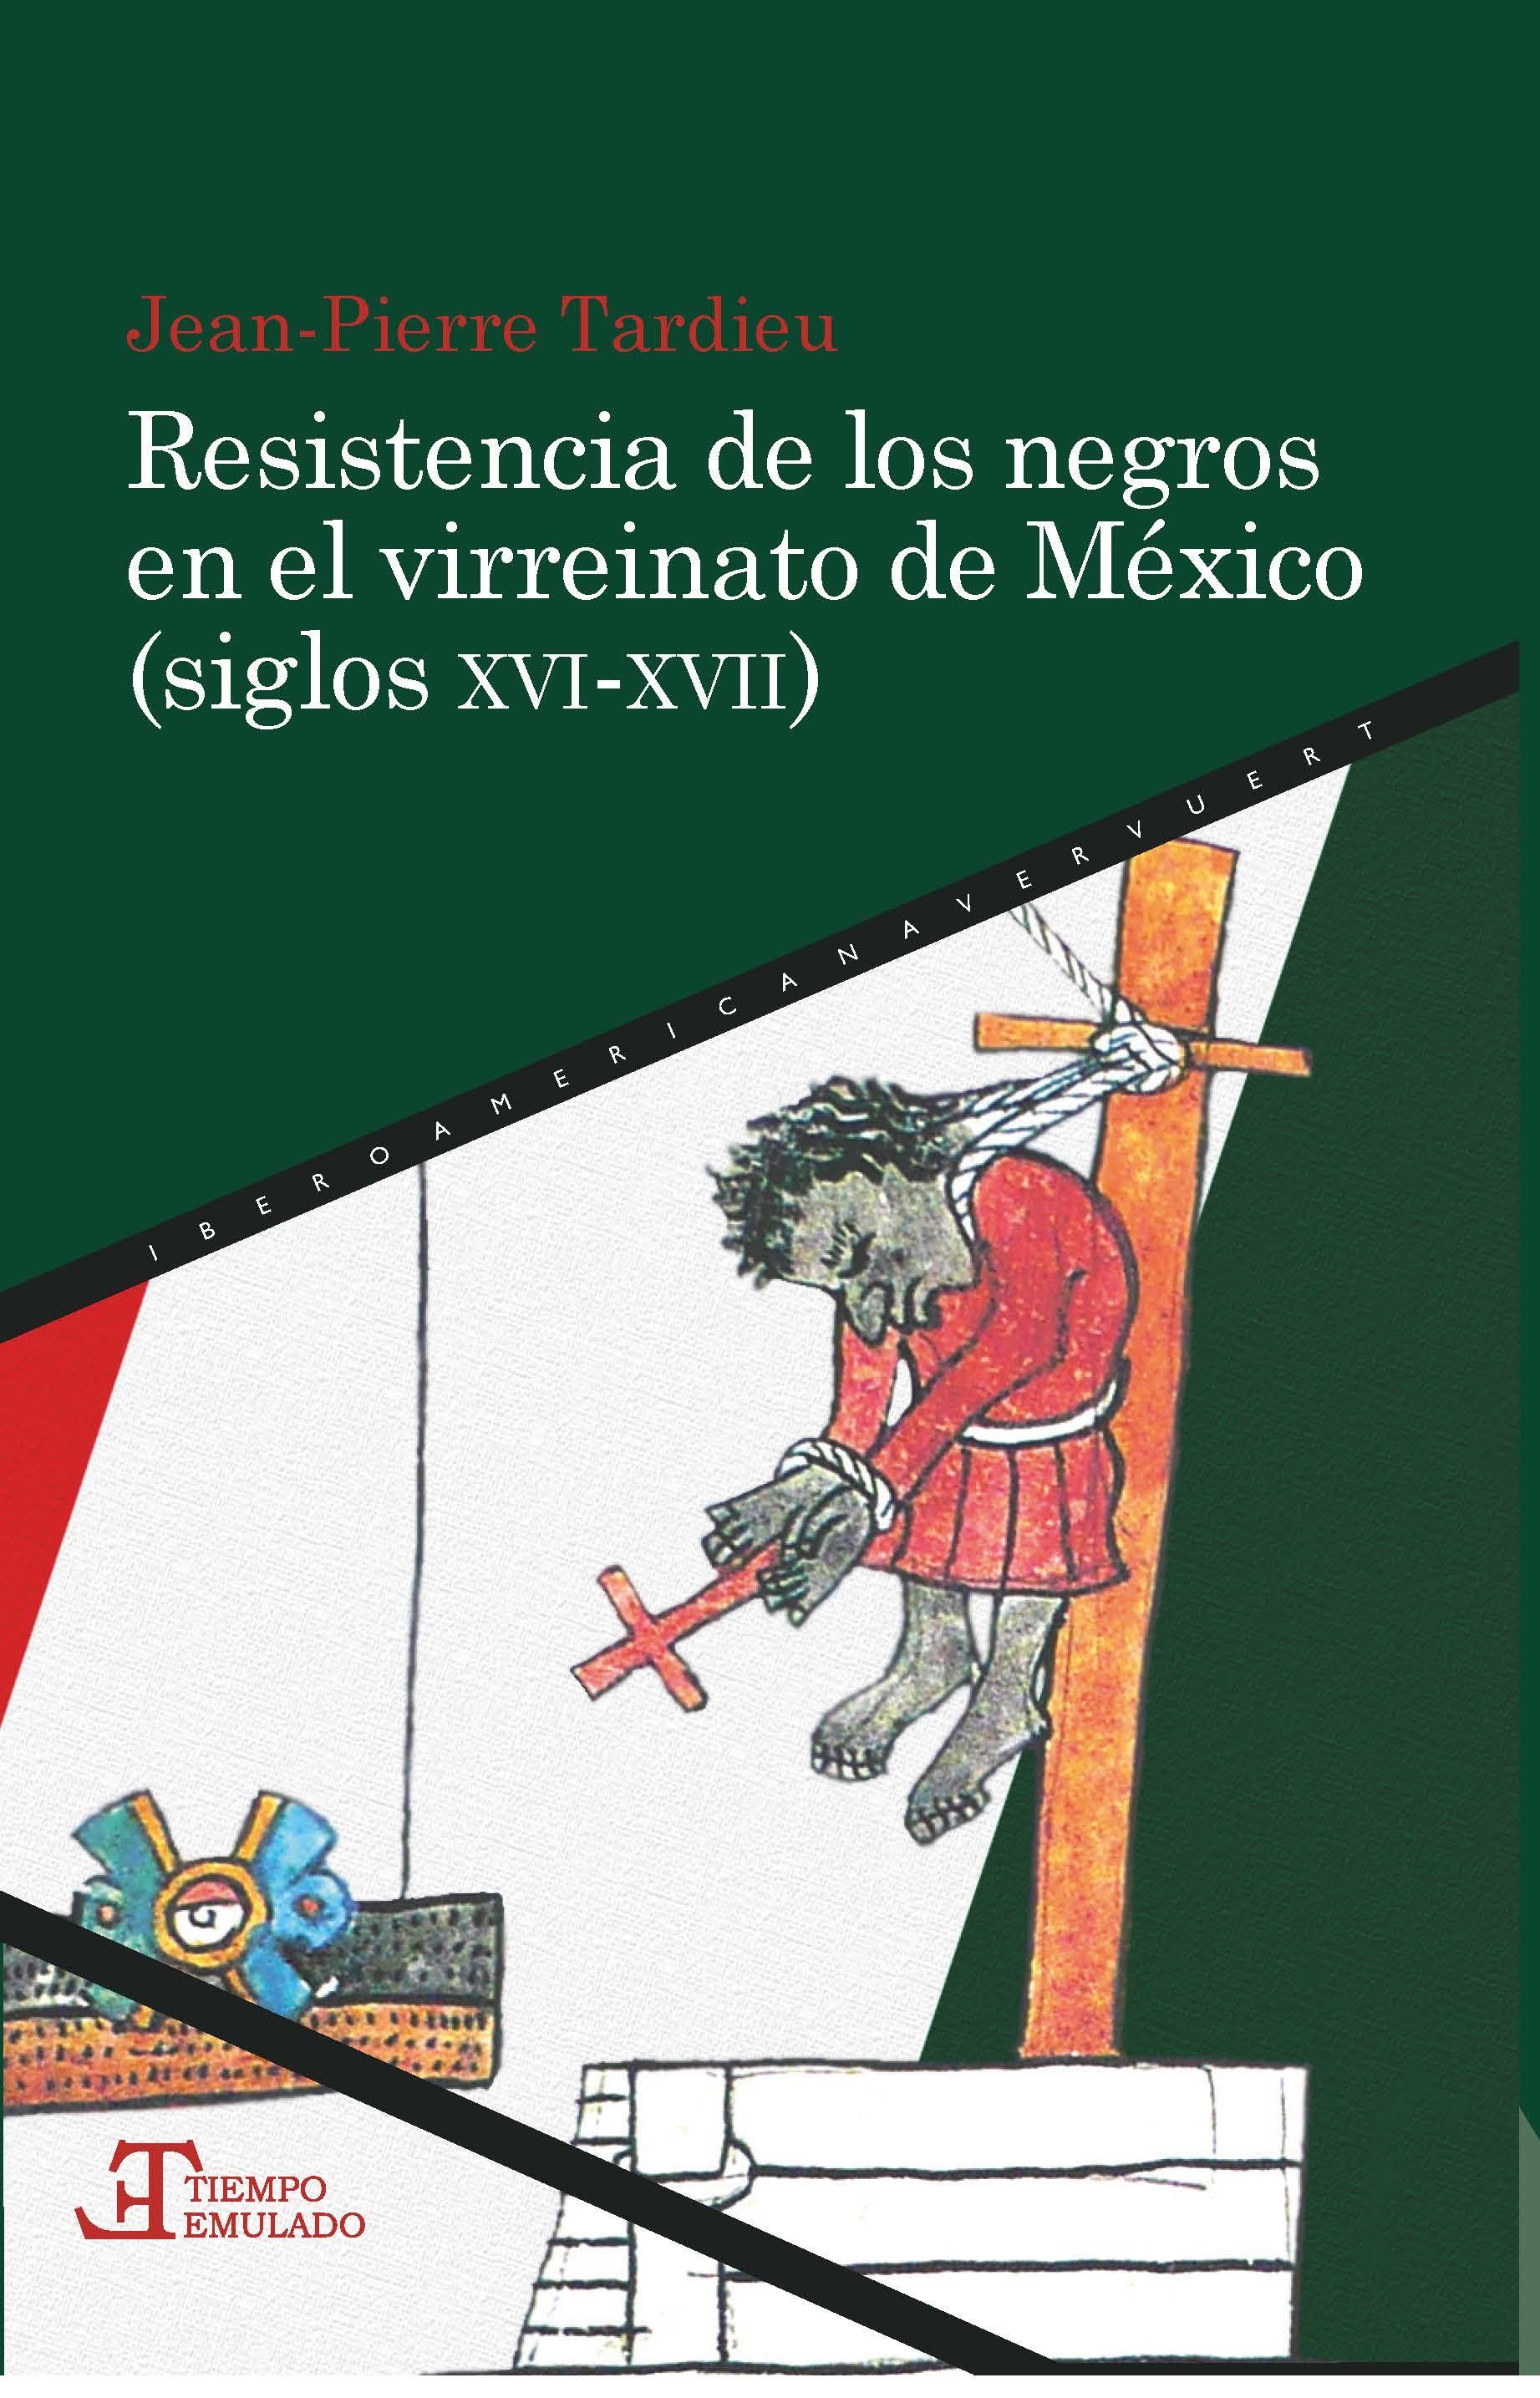 Resistencia de los negros en el virreinato de México (siglos XVI-XVII). 